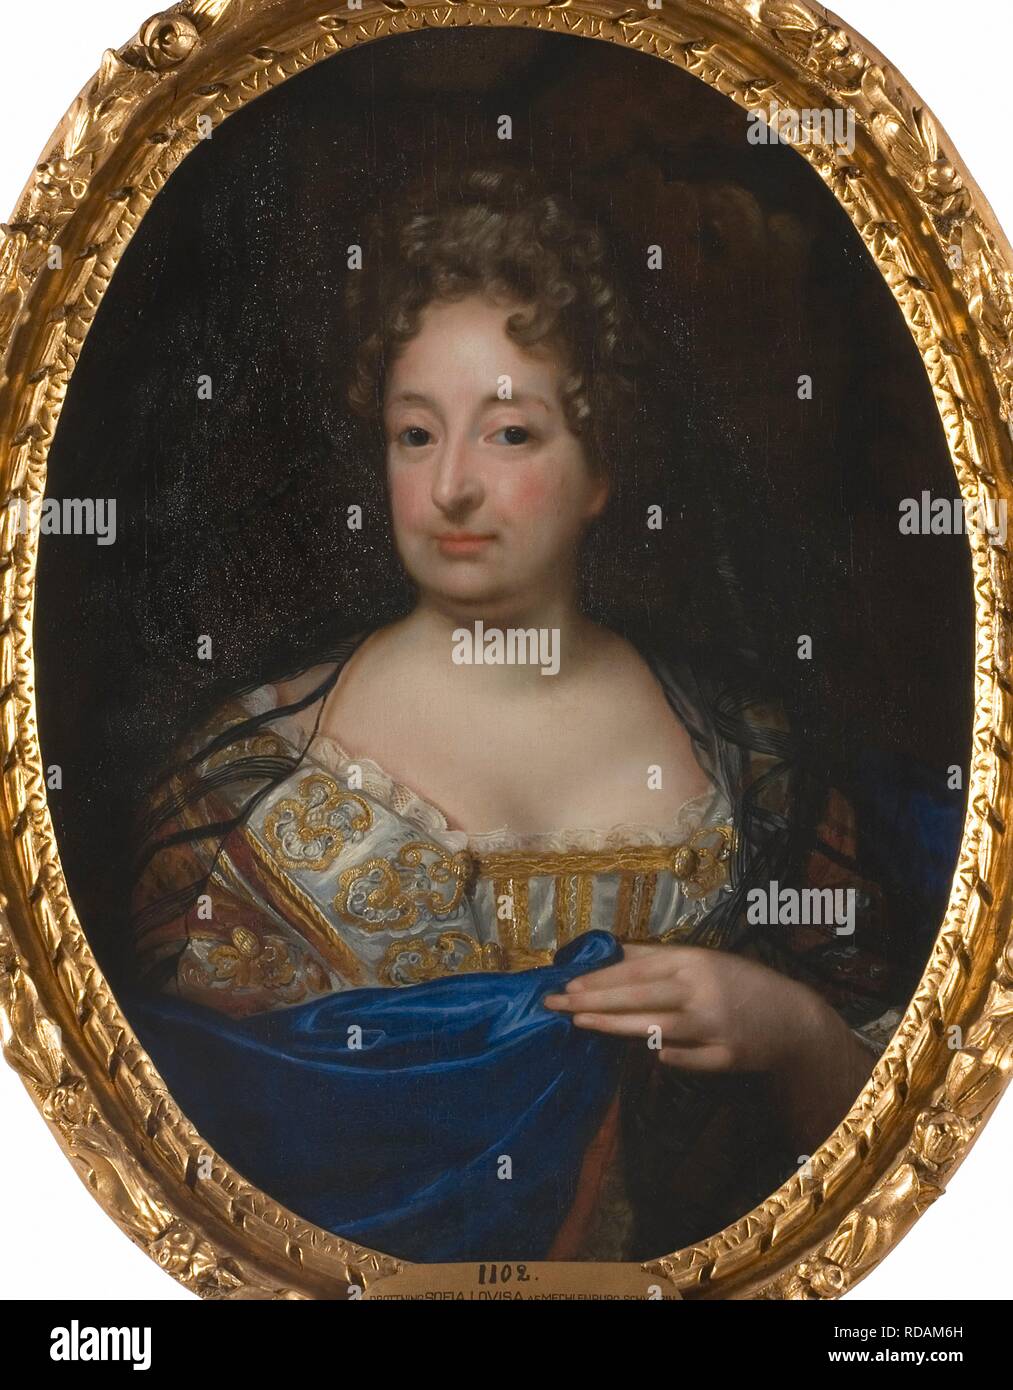 Ritratto di Sophia Charlotte di Hannover (1668-1705), regina in Prussia. Museo: Nationalmuseum di Stoccolma. Autore: Krafft, David von. Foto Stock